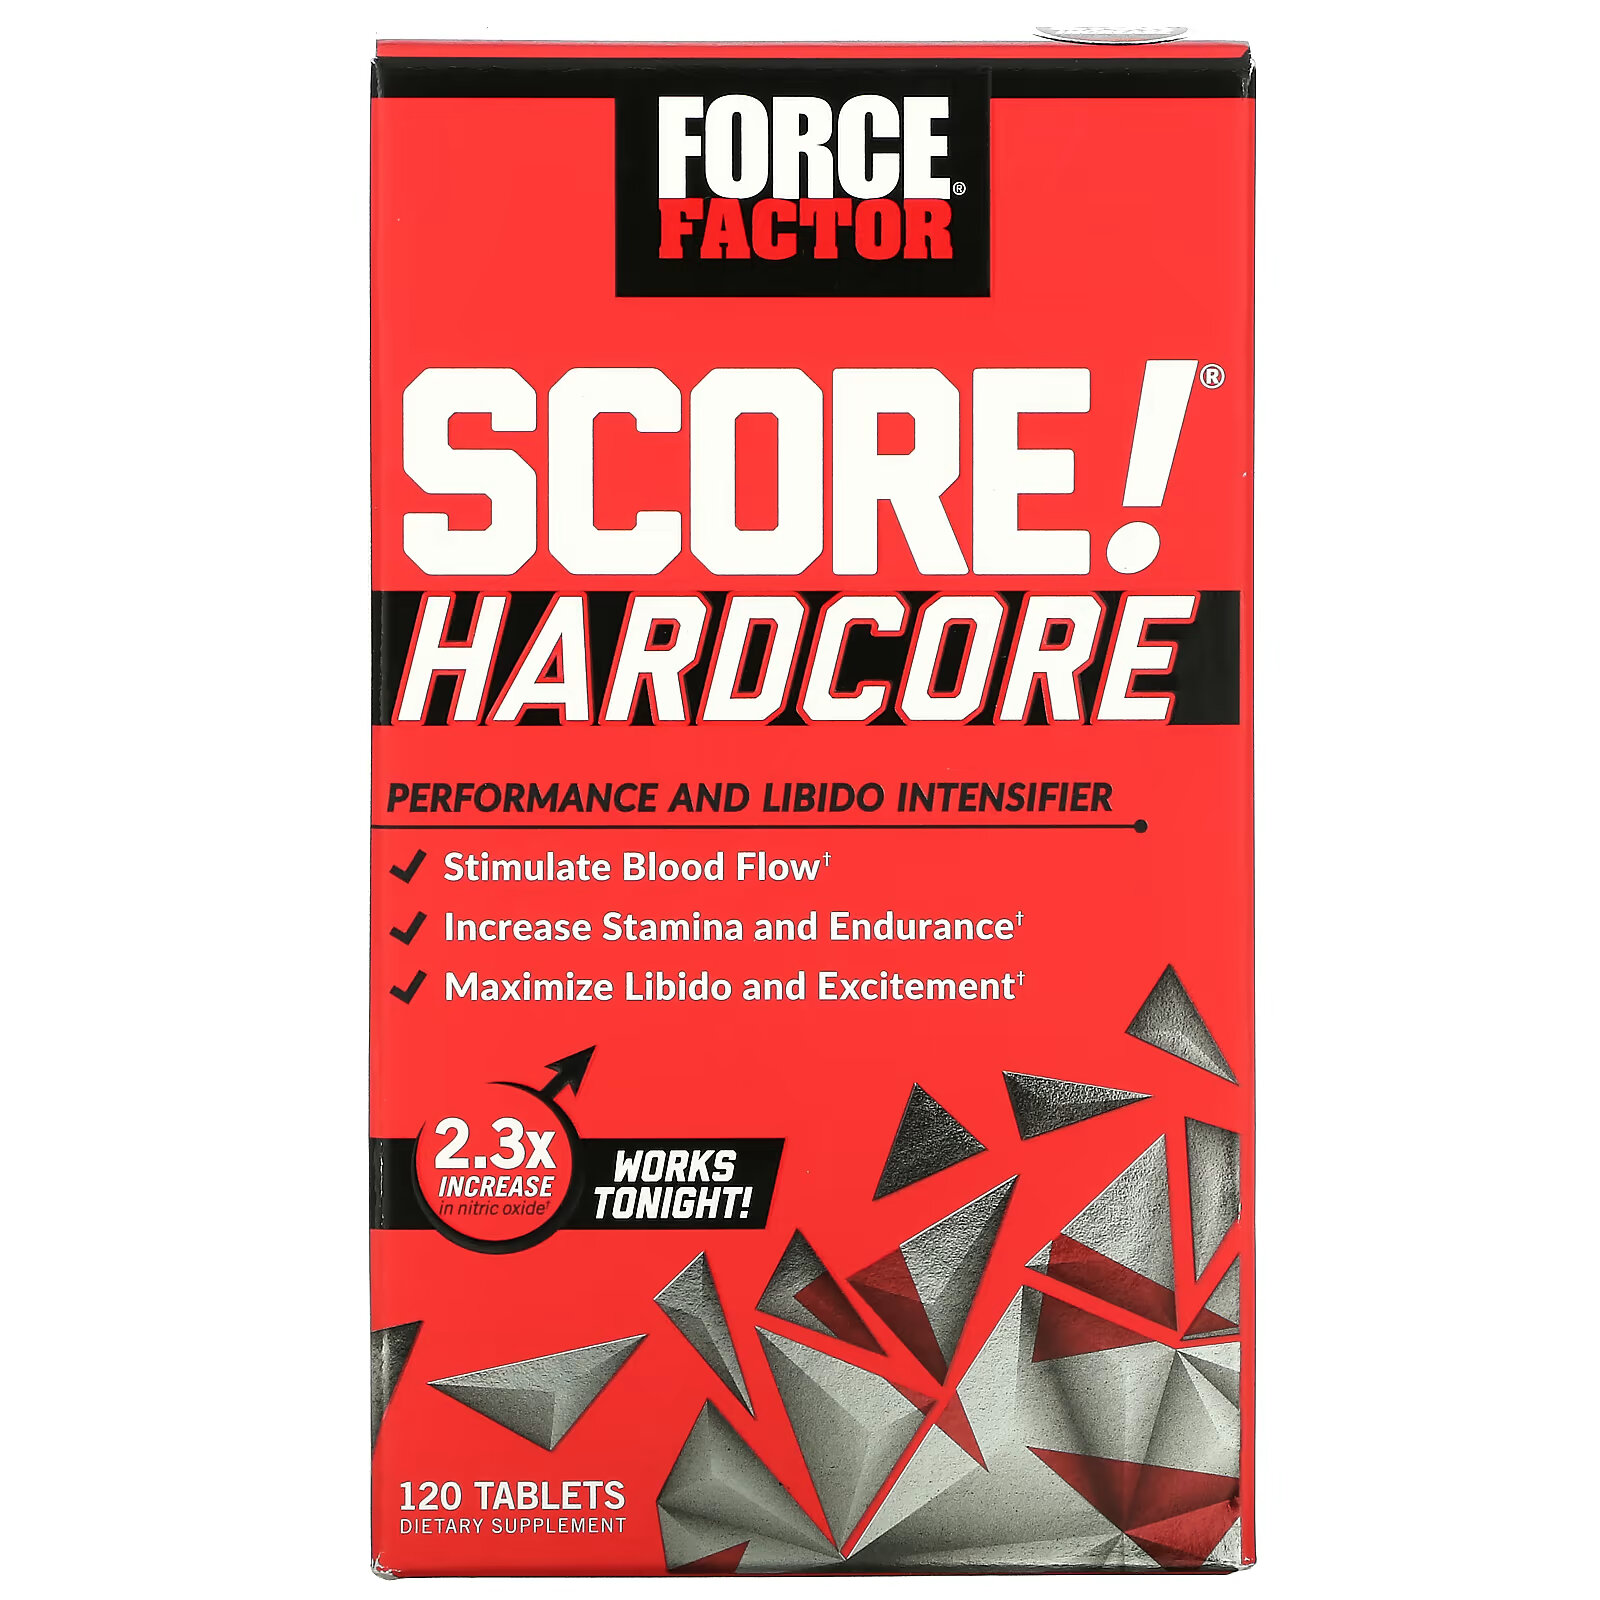 Force Factor, SCORE! Hardcore, средство для повышения производительности и либидо, 120 таблеток force factor score hardcore средство для повышения производительности и либидо 120 таблеток